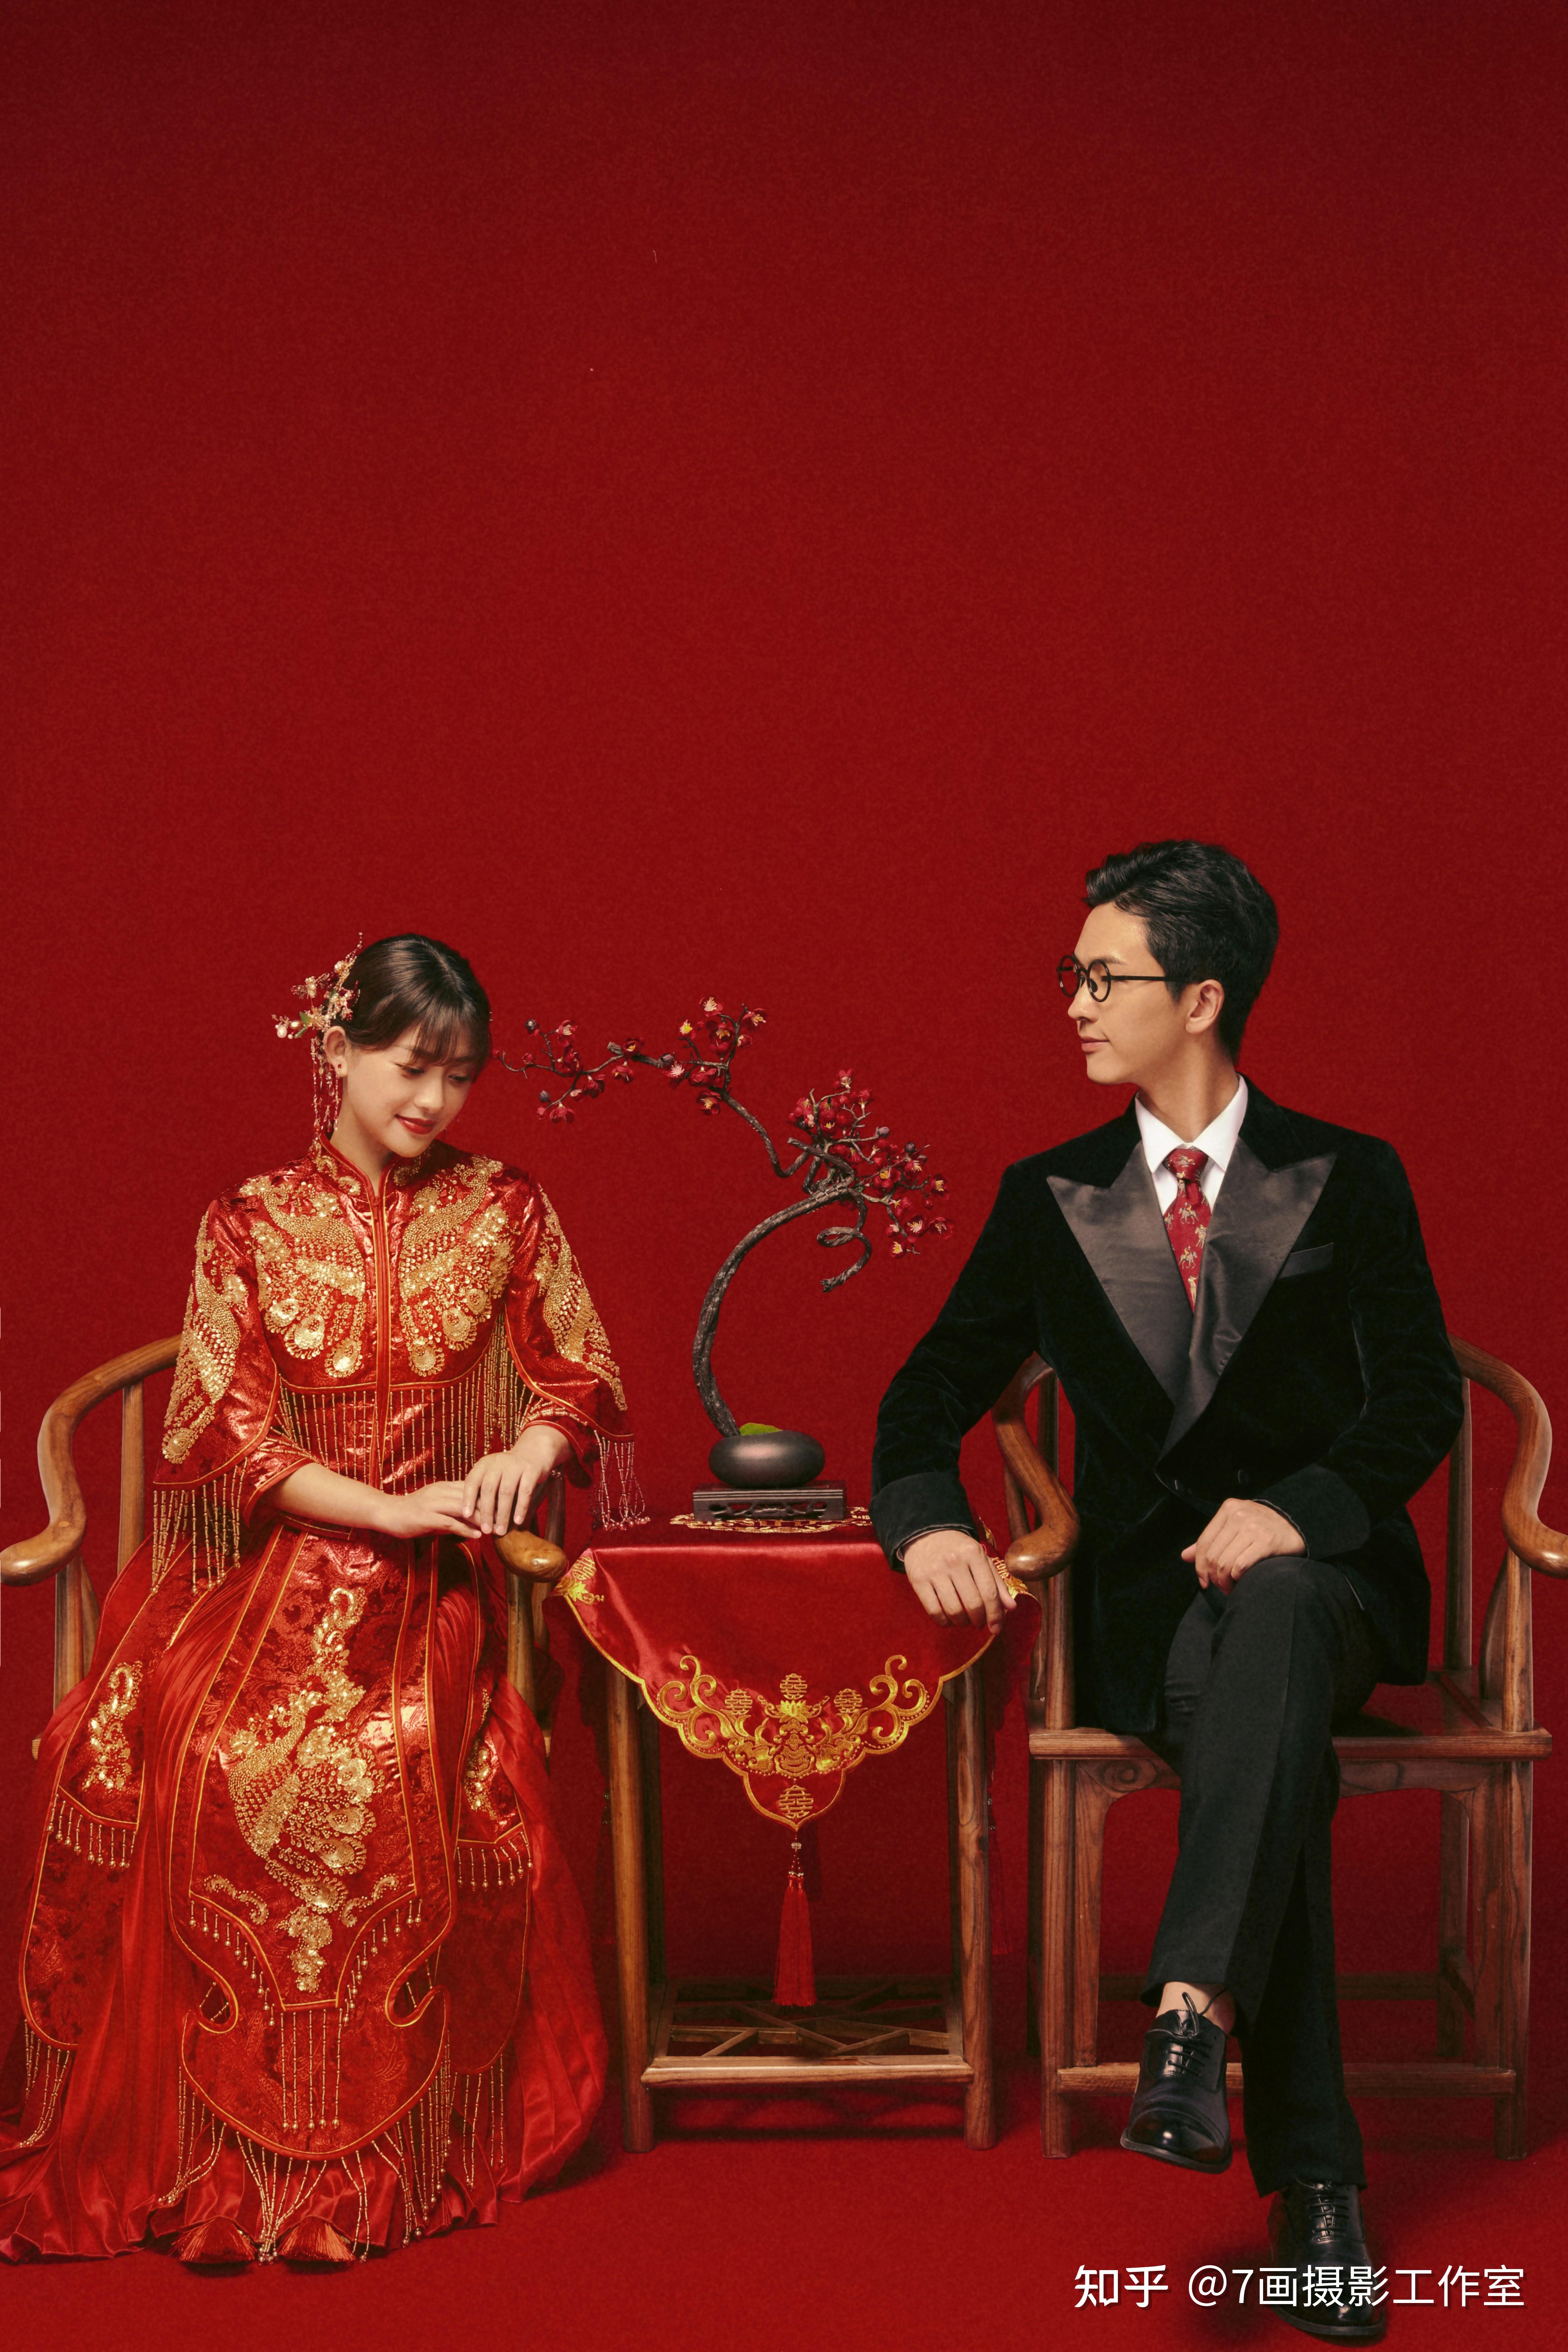 古典中式婚纱照～父母都很喜欢哦~您会拍吗?